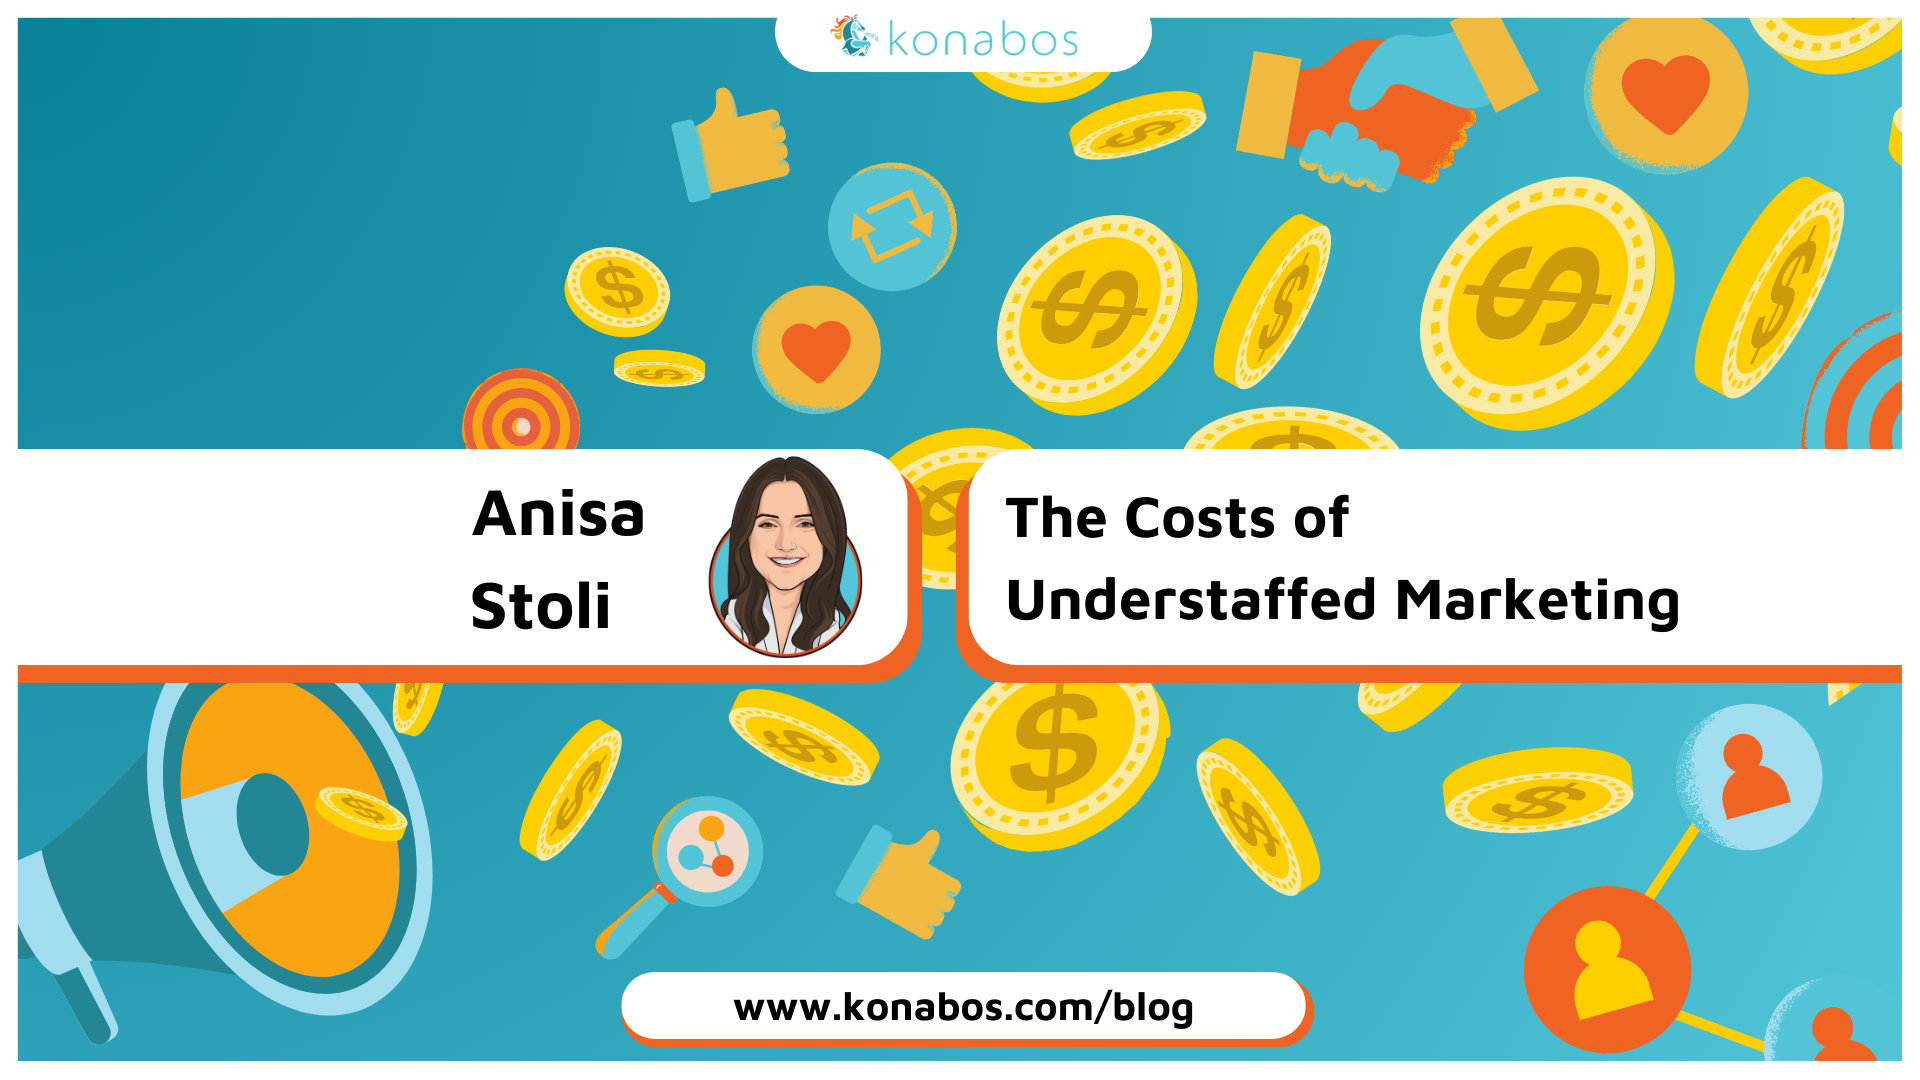 Anisa Stoli - The Costs of Understaffed Marketing